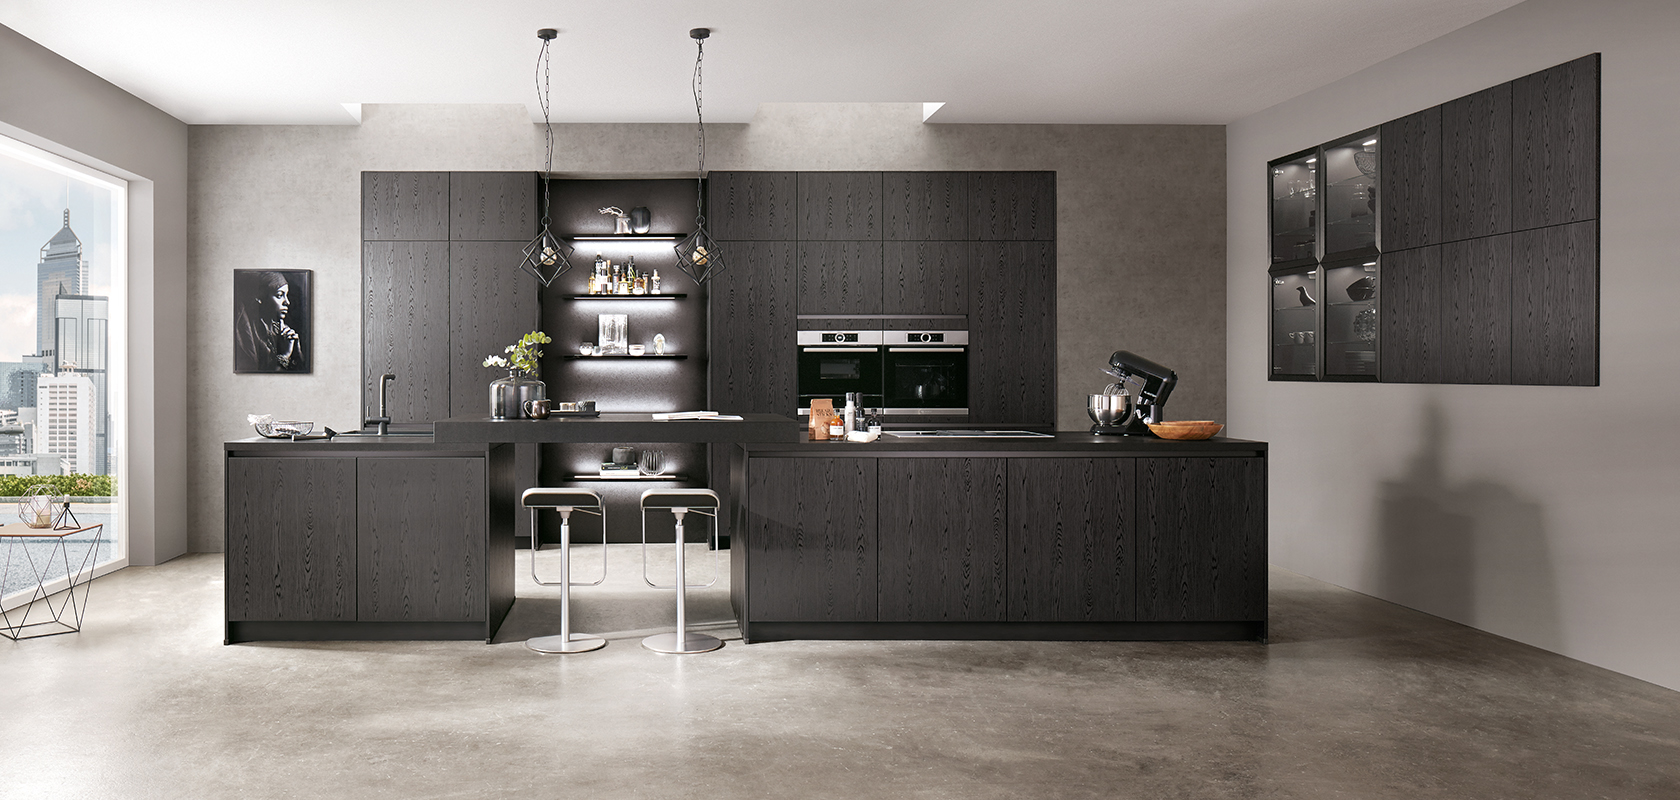 Diseño de cocina moderna con elegantes gabinetes negros, electrodomésticos de acero inoxidable y una isla central con taburetes de bar frente a un fondo de texturas de concreto gris.